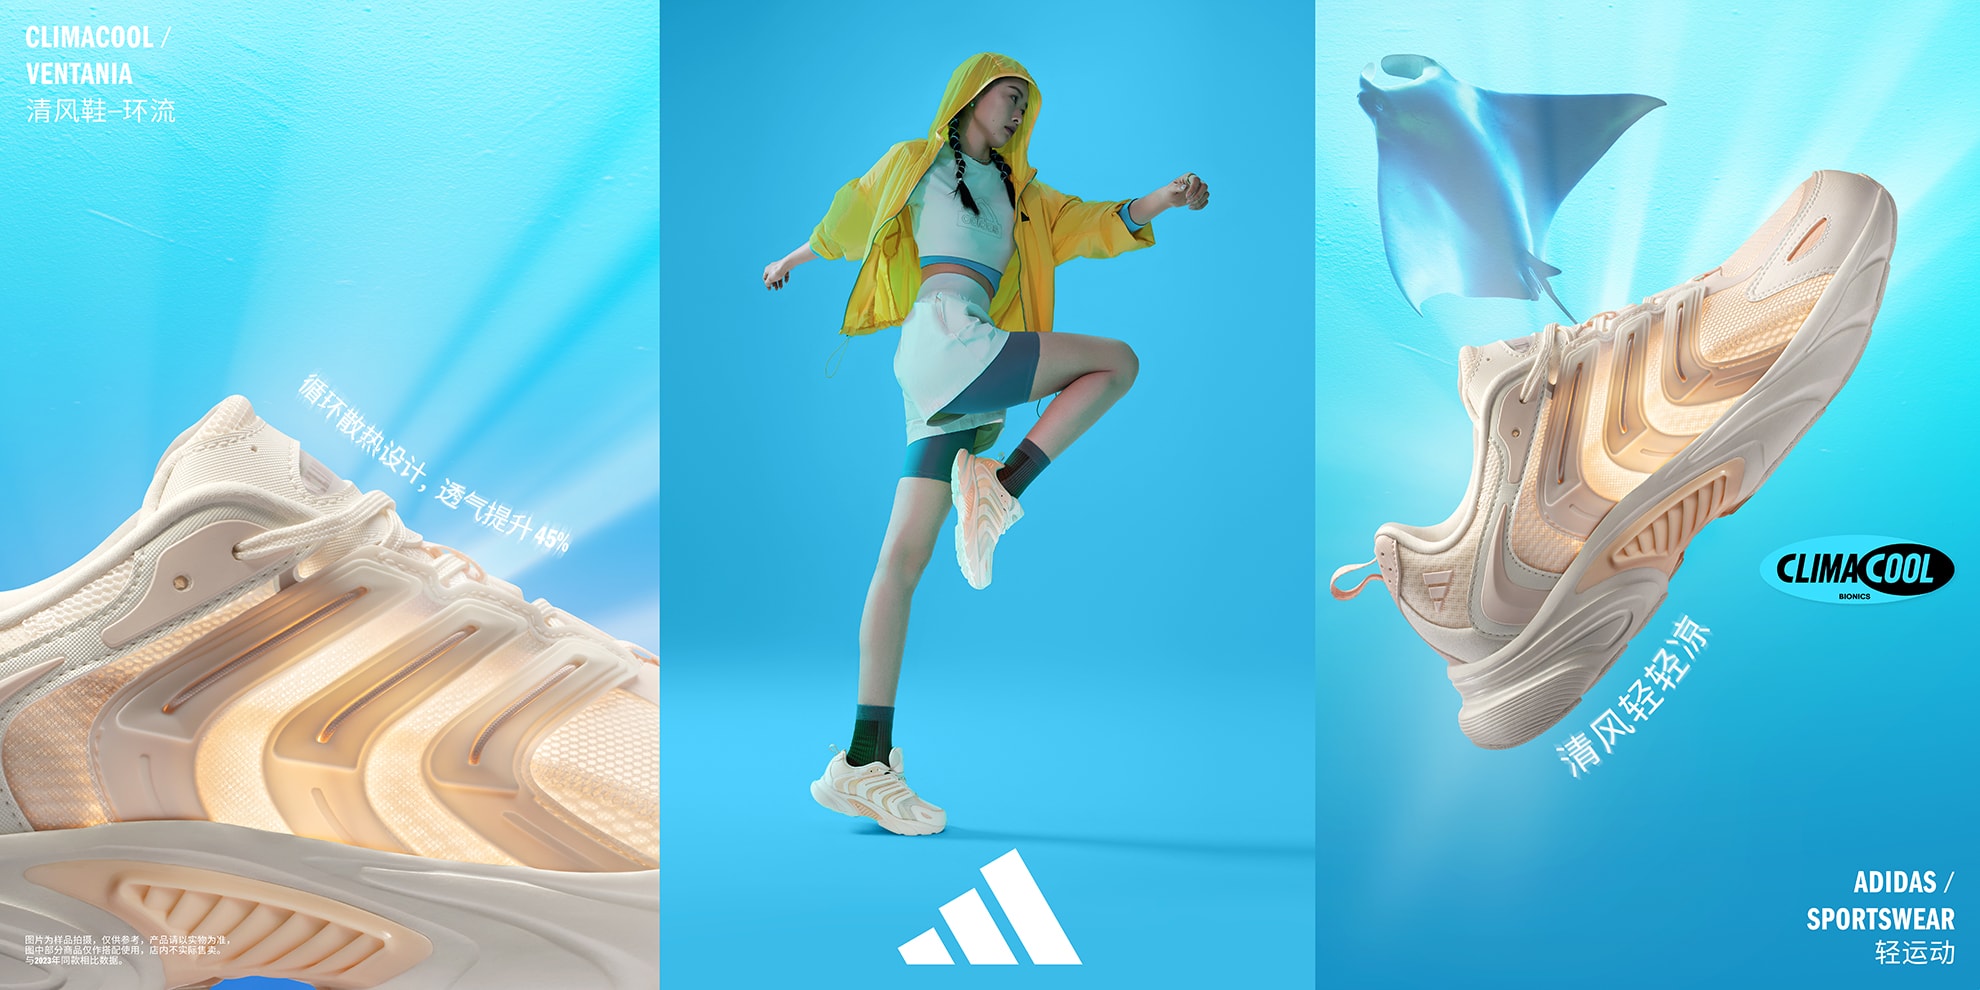 adidas Sportswear 全新 CLIMACOOL 清风系列登场